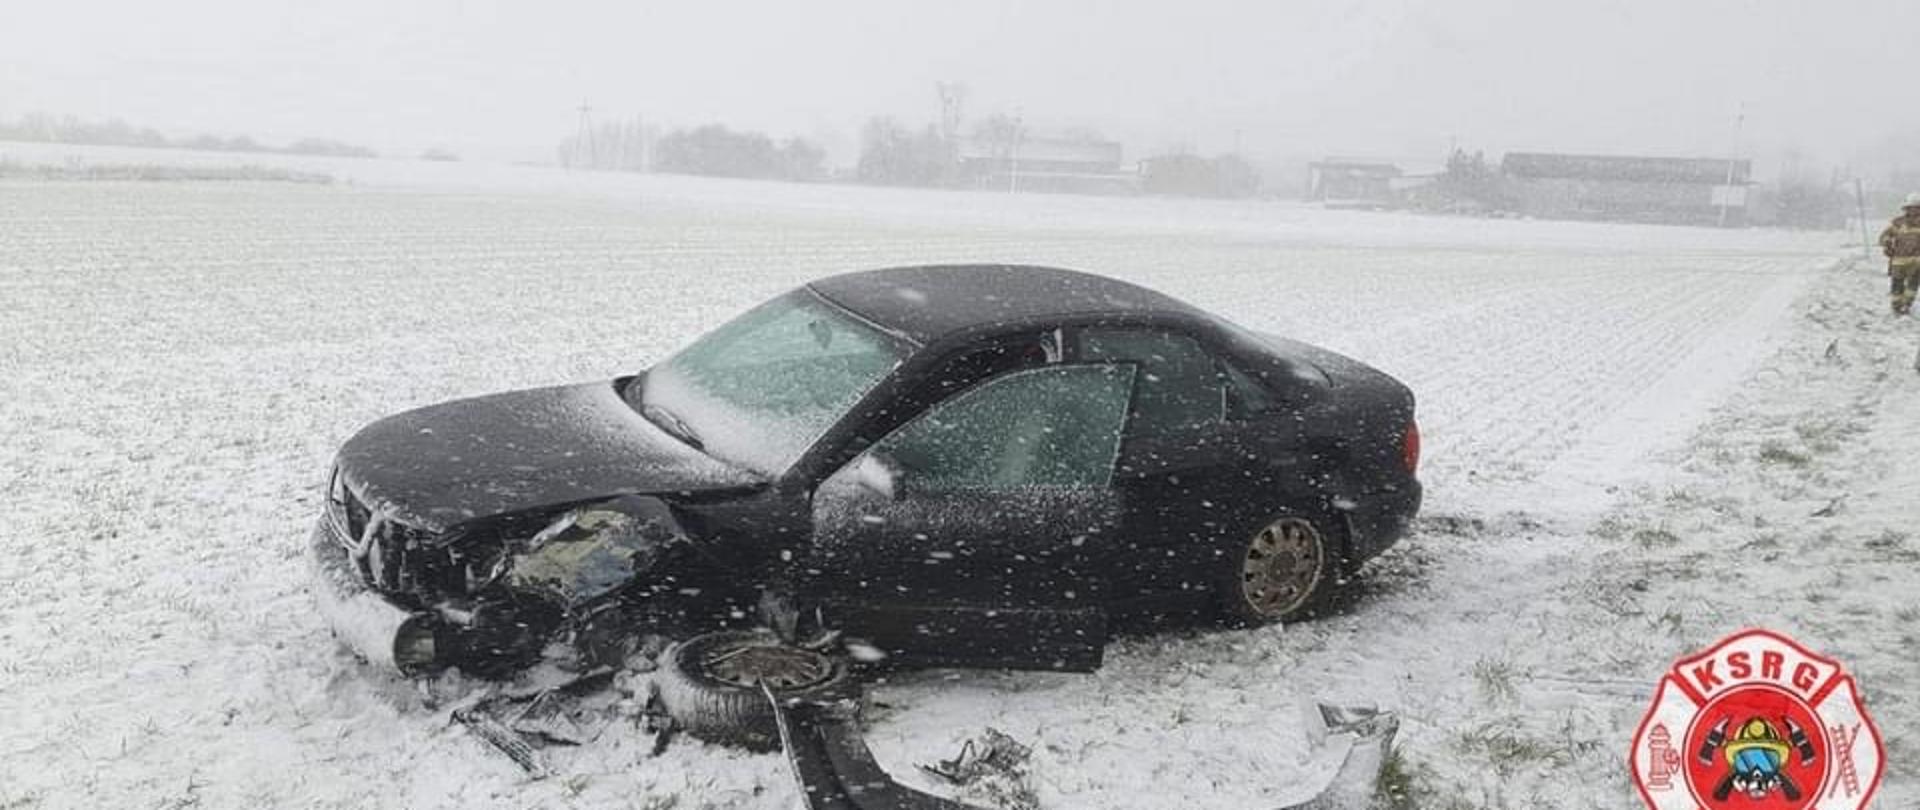 Samochód osobowy po kolizji na zaśnieżonym polu. Samochód ma oderwane lewe koło i zderzak